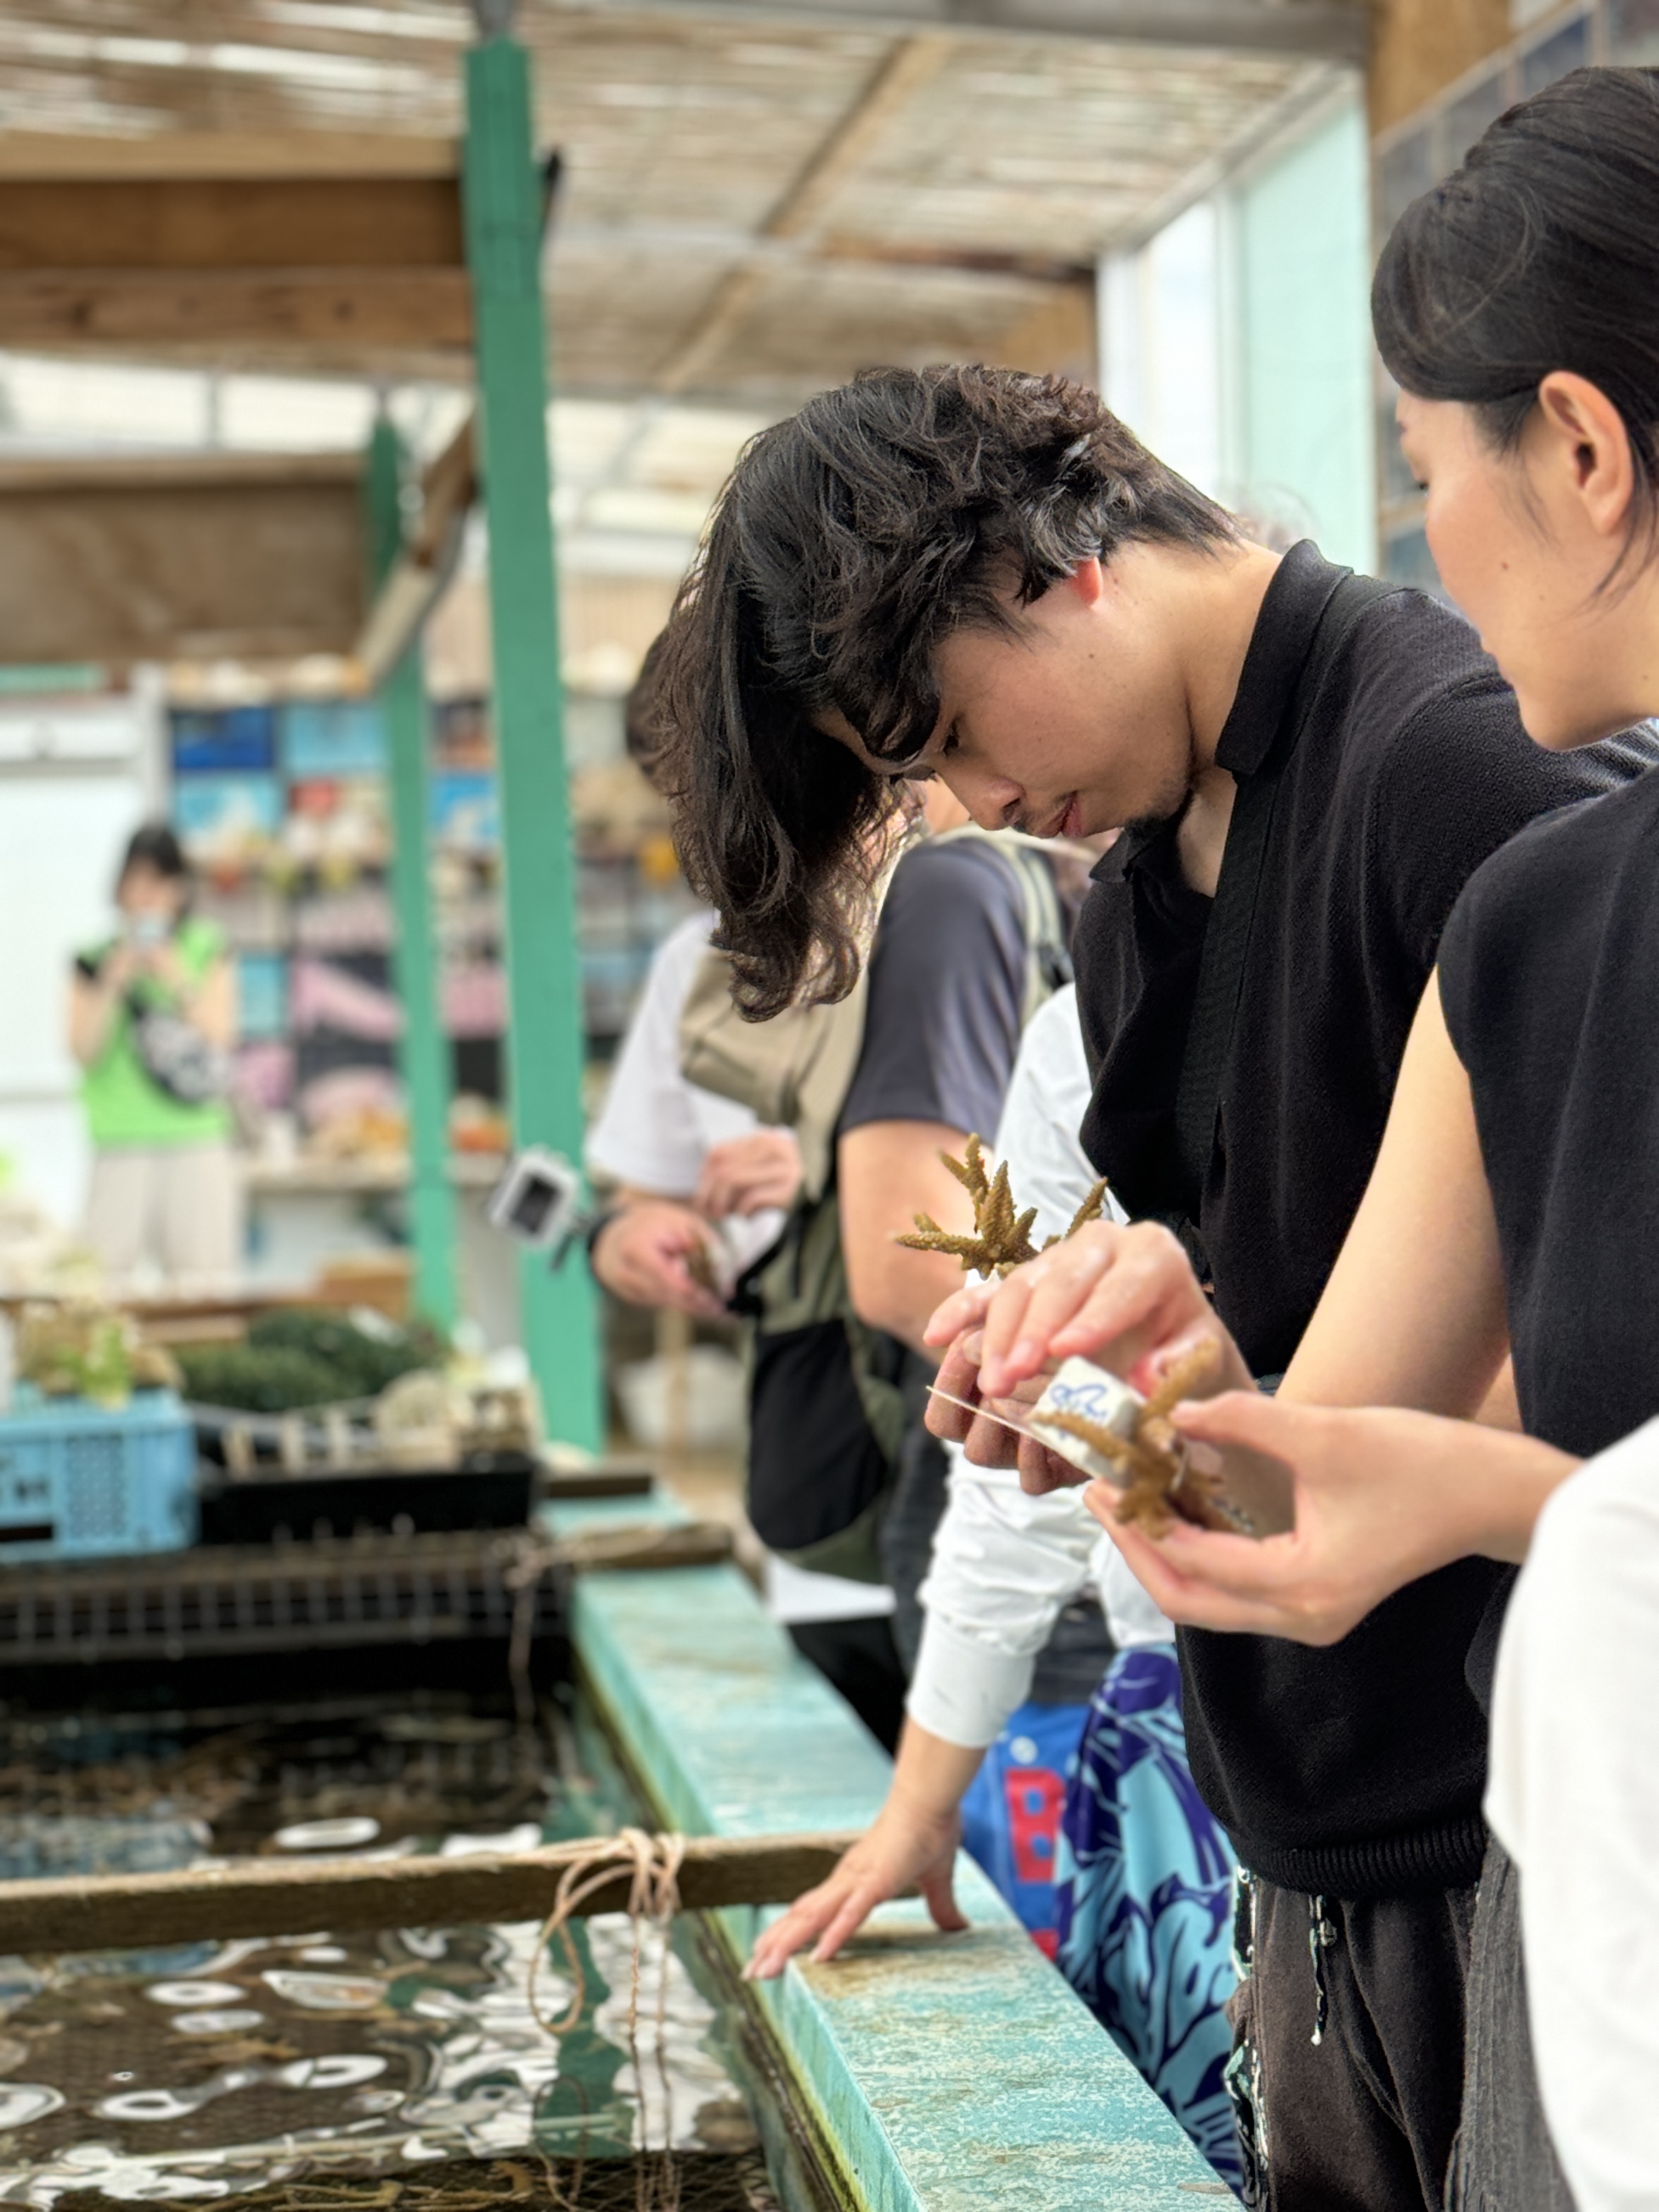 ALJでは、

『できることから始めよう』
 ～Start with ∞プロジェクト～

を掲げ、SDGsの考えのもと持続可能な各取り組みにも積極的に取り組んでいます。

～～例えば…～～
井戸寄贈、掃除ボランティア、リフレッシュPC活用、サンゴ植え付けボランティア等々…
◆画像は沖縄で行ったサンゴ植え付けボランティアの様子です